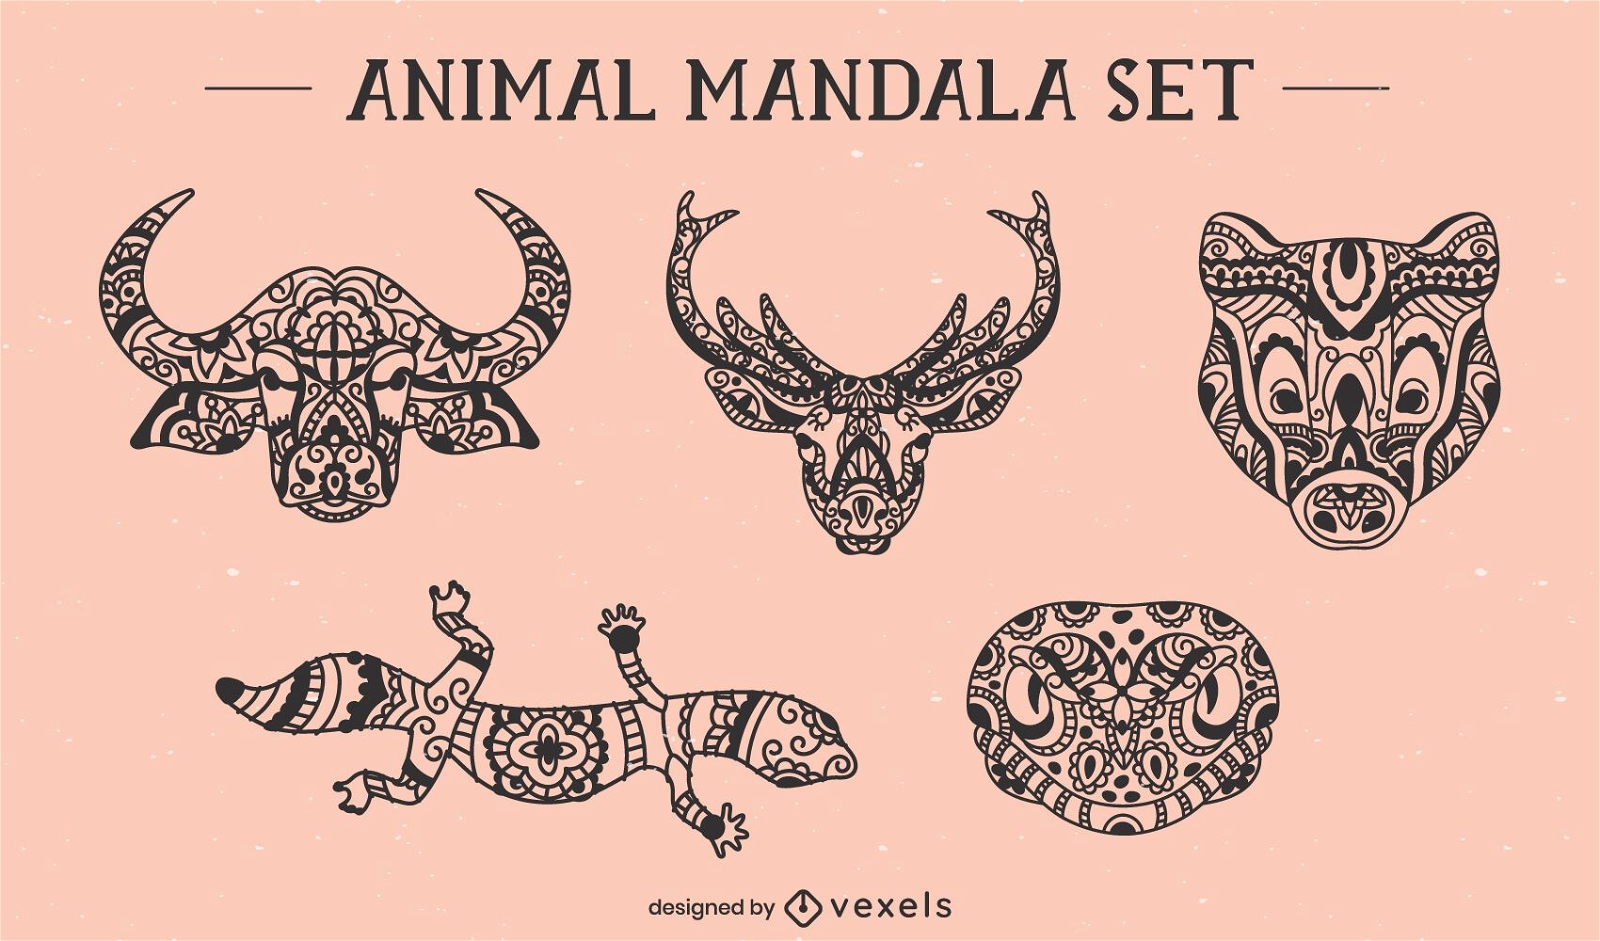 Tiergesichter frontales Mandala gesetzt